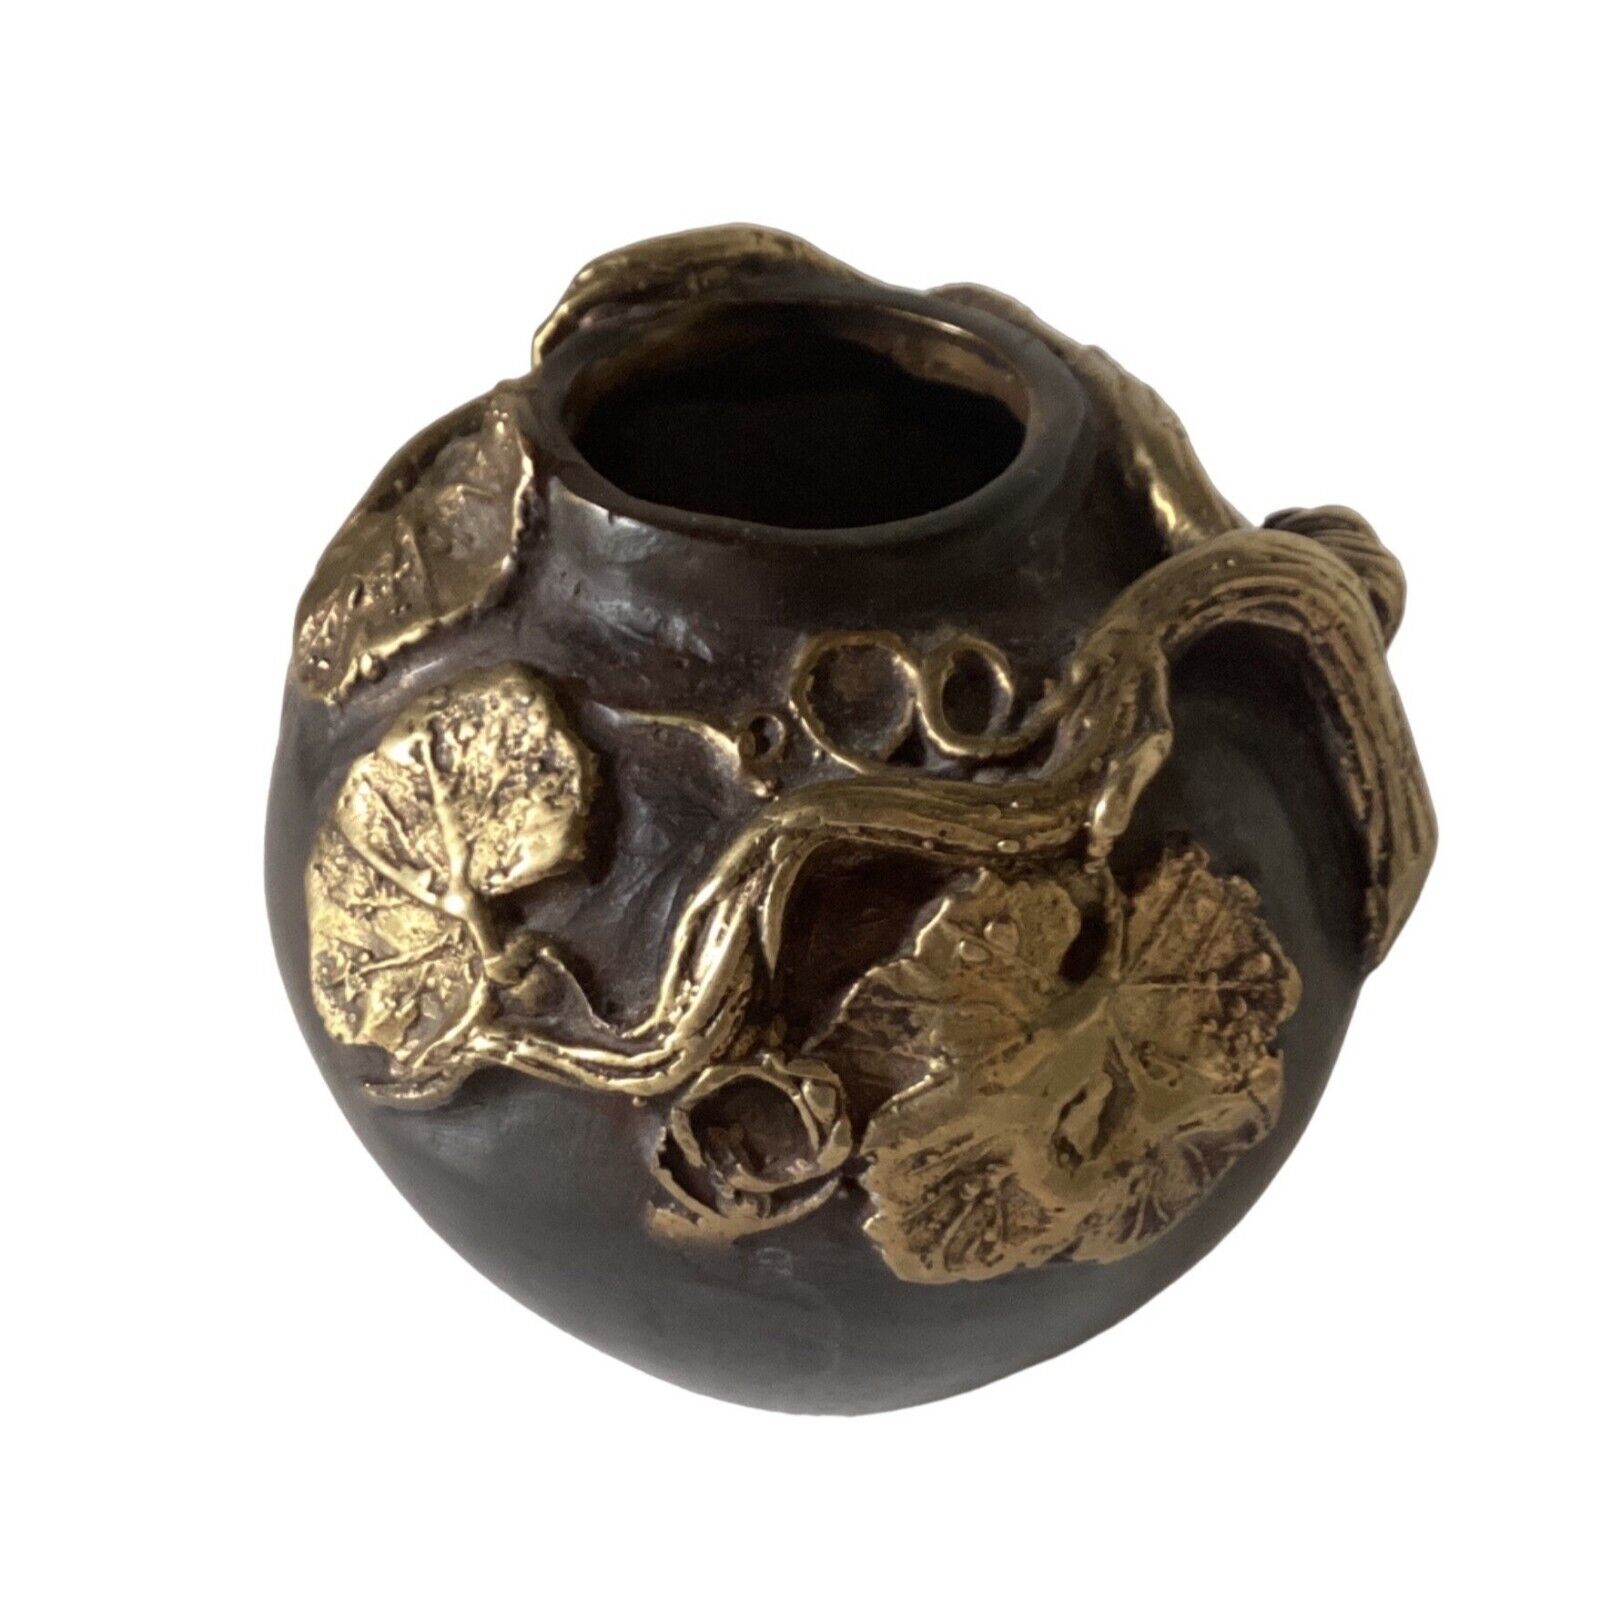 Antique American Bronze Vases Baroque Leaves Design Victorian Era 1837-1901